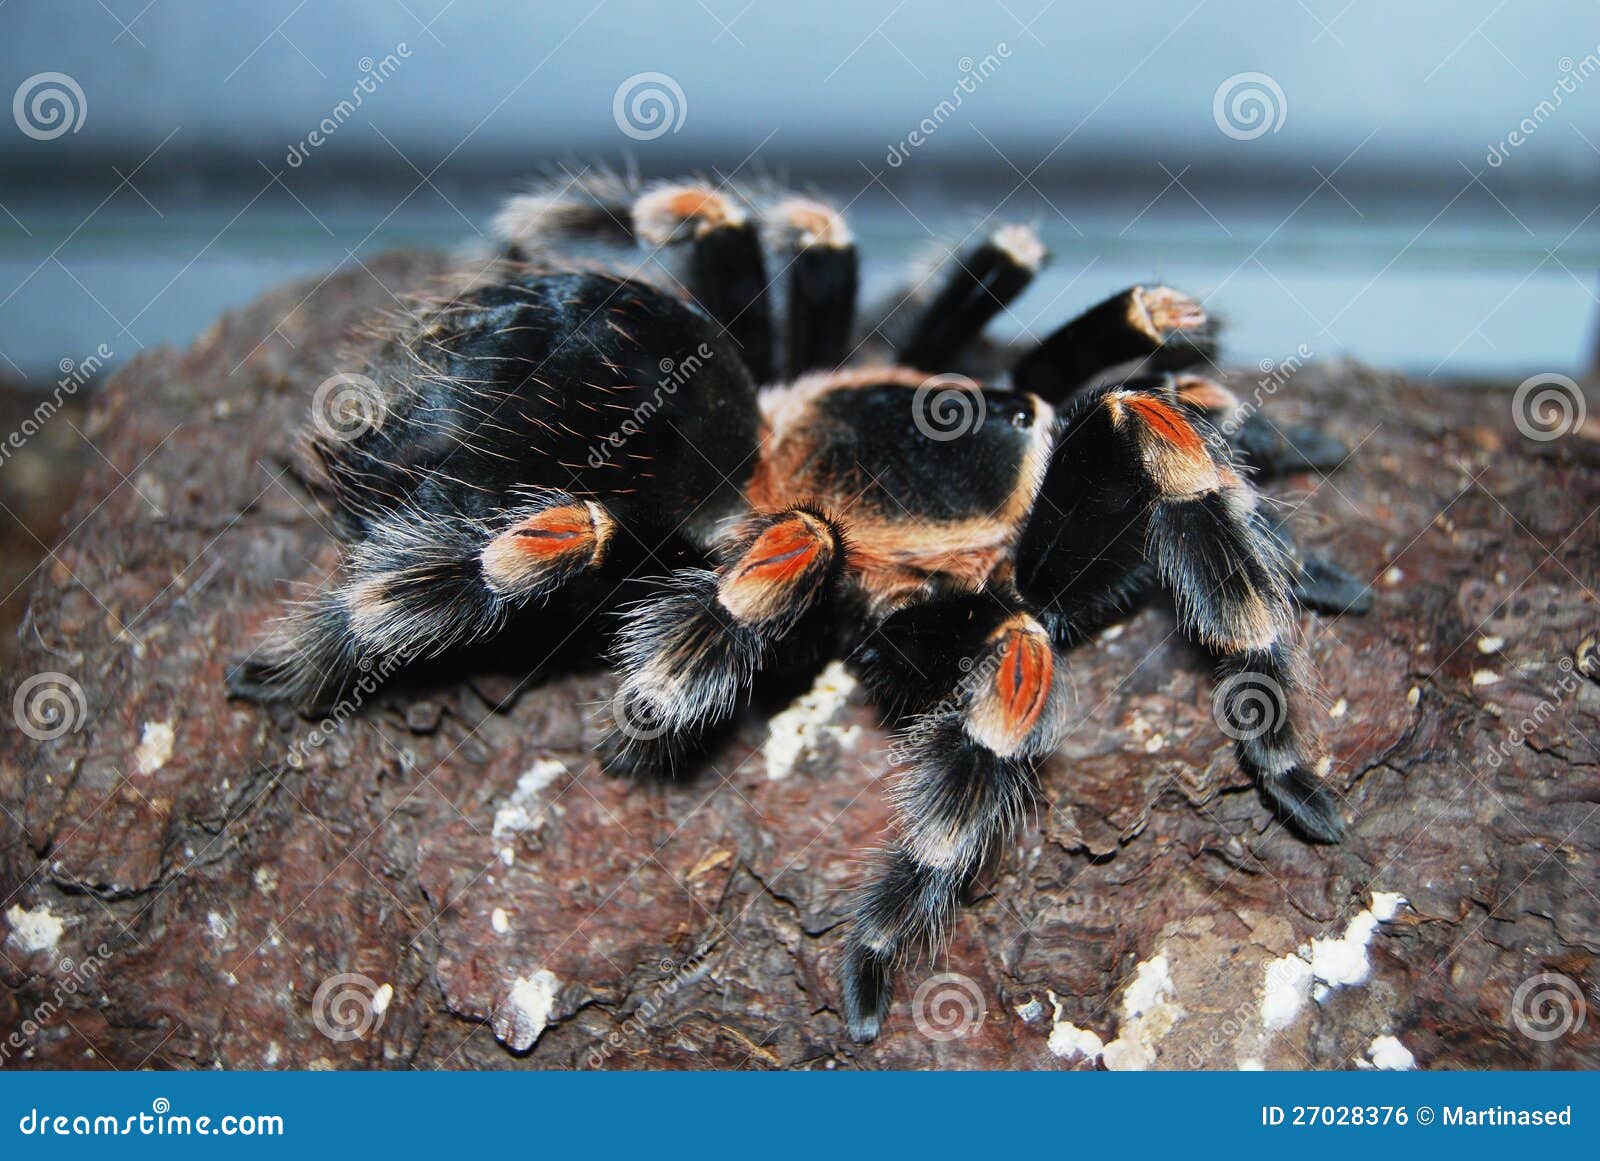 Brachypelma Smithi Mexican Redknee Stock Photo - Image of tarantulas ...